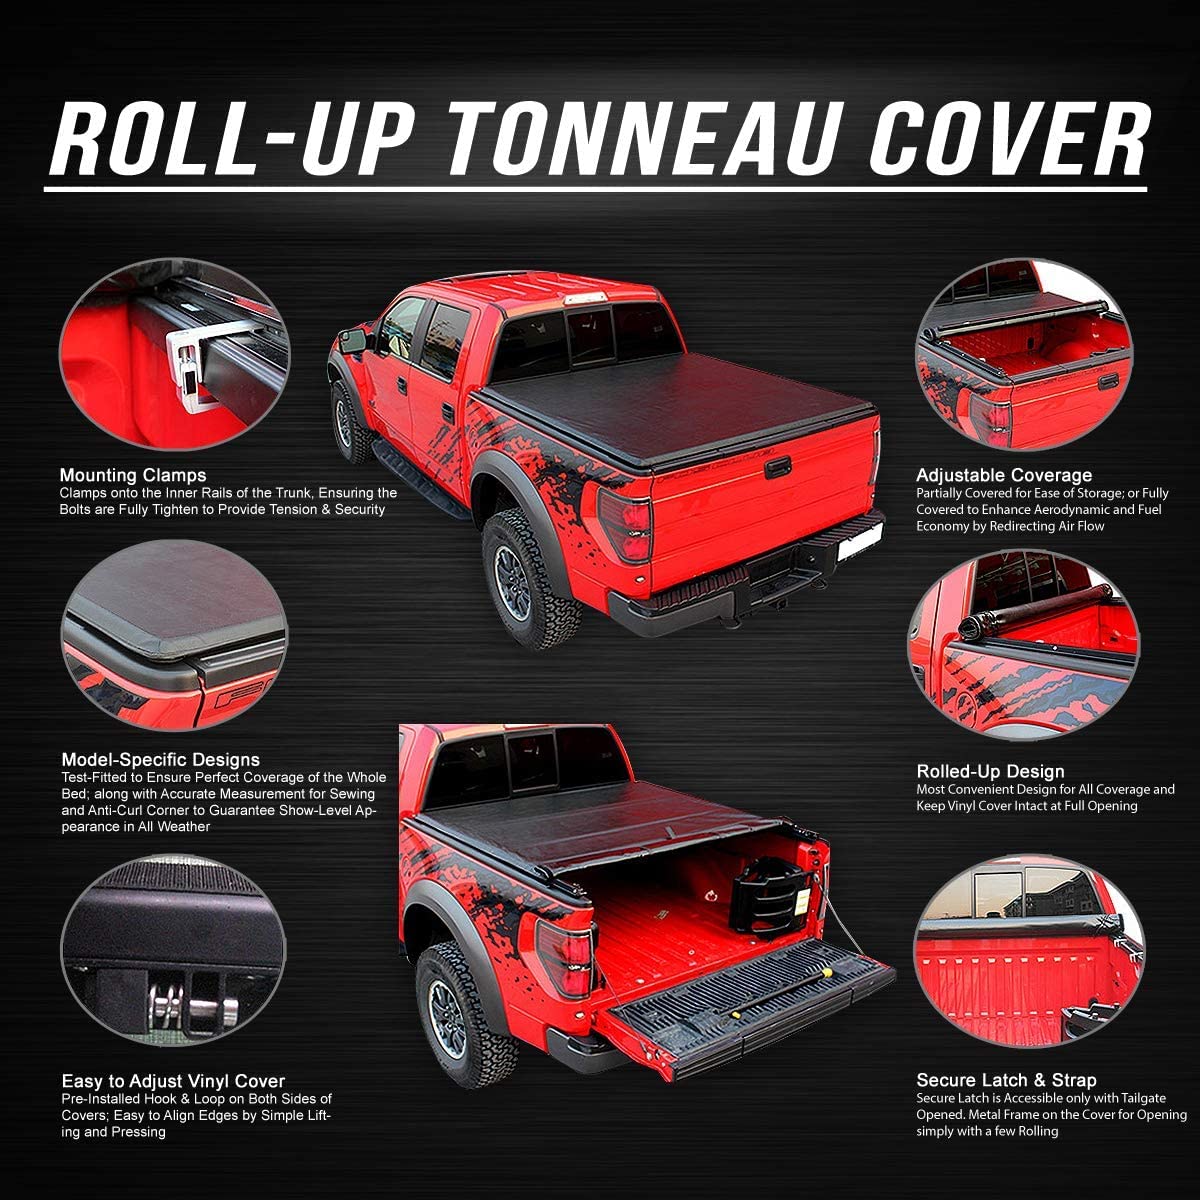 Soft Vinyl Roll Up Tonneau Cover Compatible with F-150 5.5Ft Fleetside Bed Cubierta enrollable de vinilo suave compatible con cama 5.5 pies 2004 2005 2006 2007 2008 2009 2010 2011 2012 2013 2014